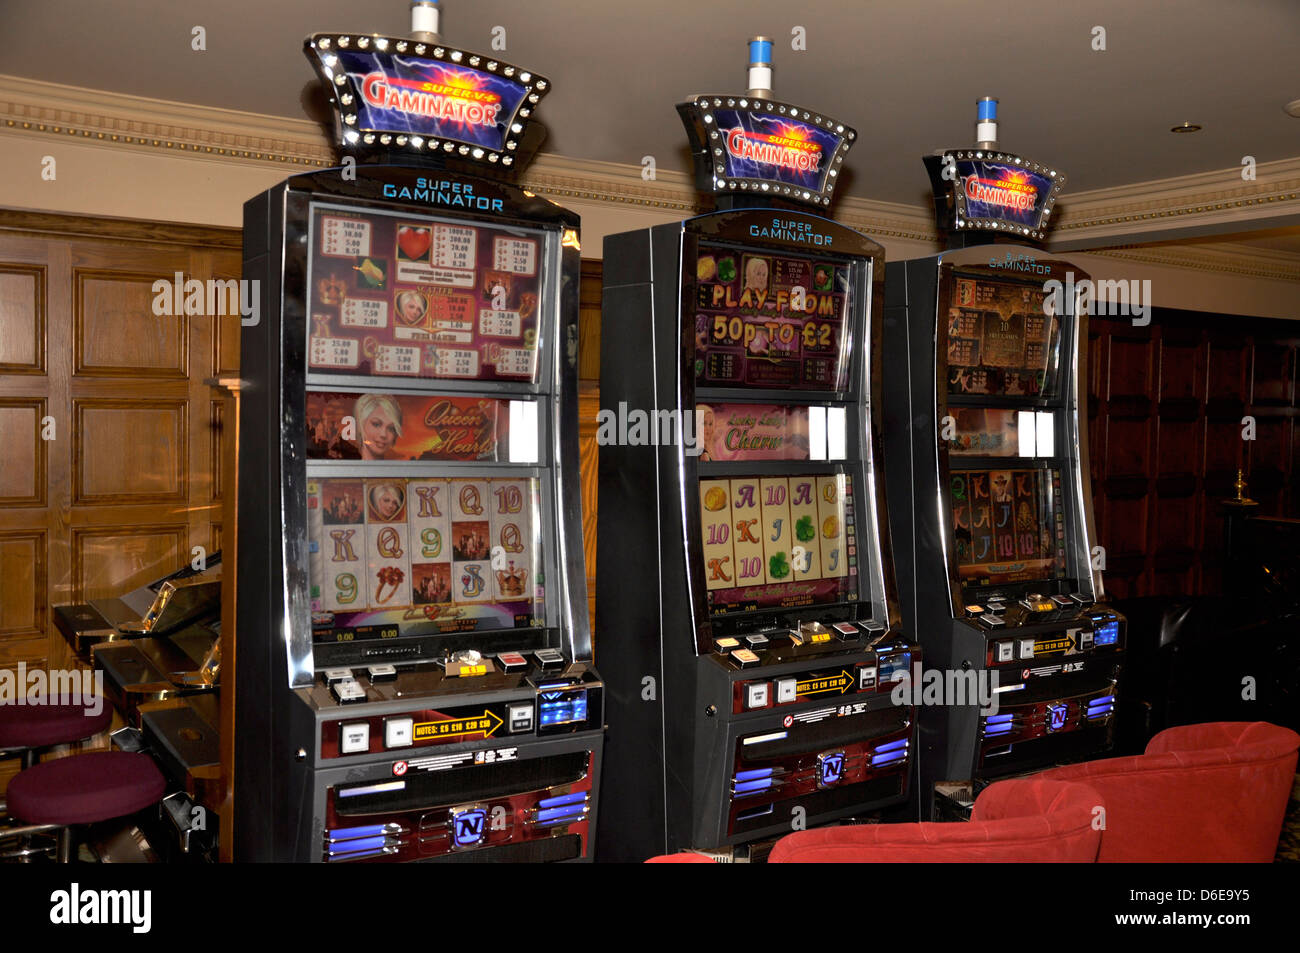 La máquina tragaperras de casino Tragaperras de frutas english dinero fortuna cuatro mil libras de juegos ganador de jackpot gamble Foto de stock